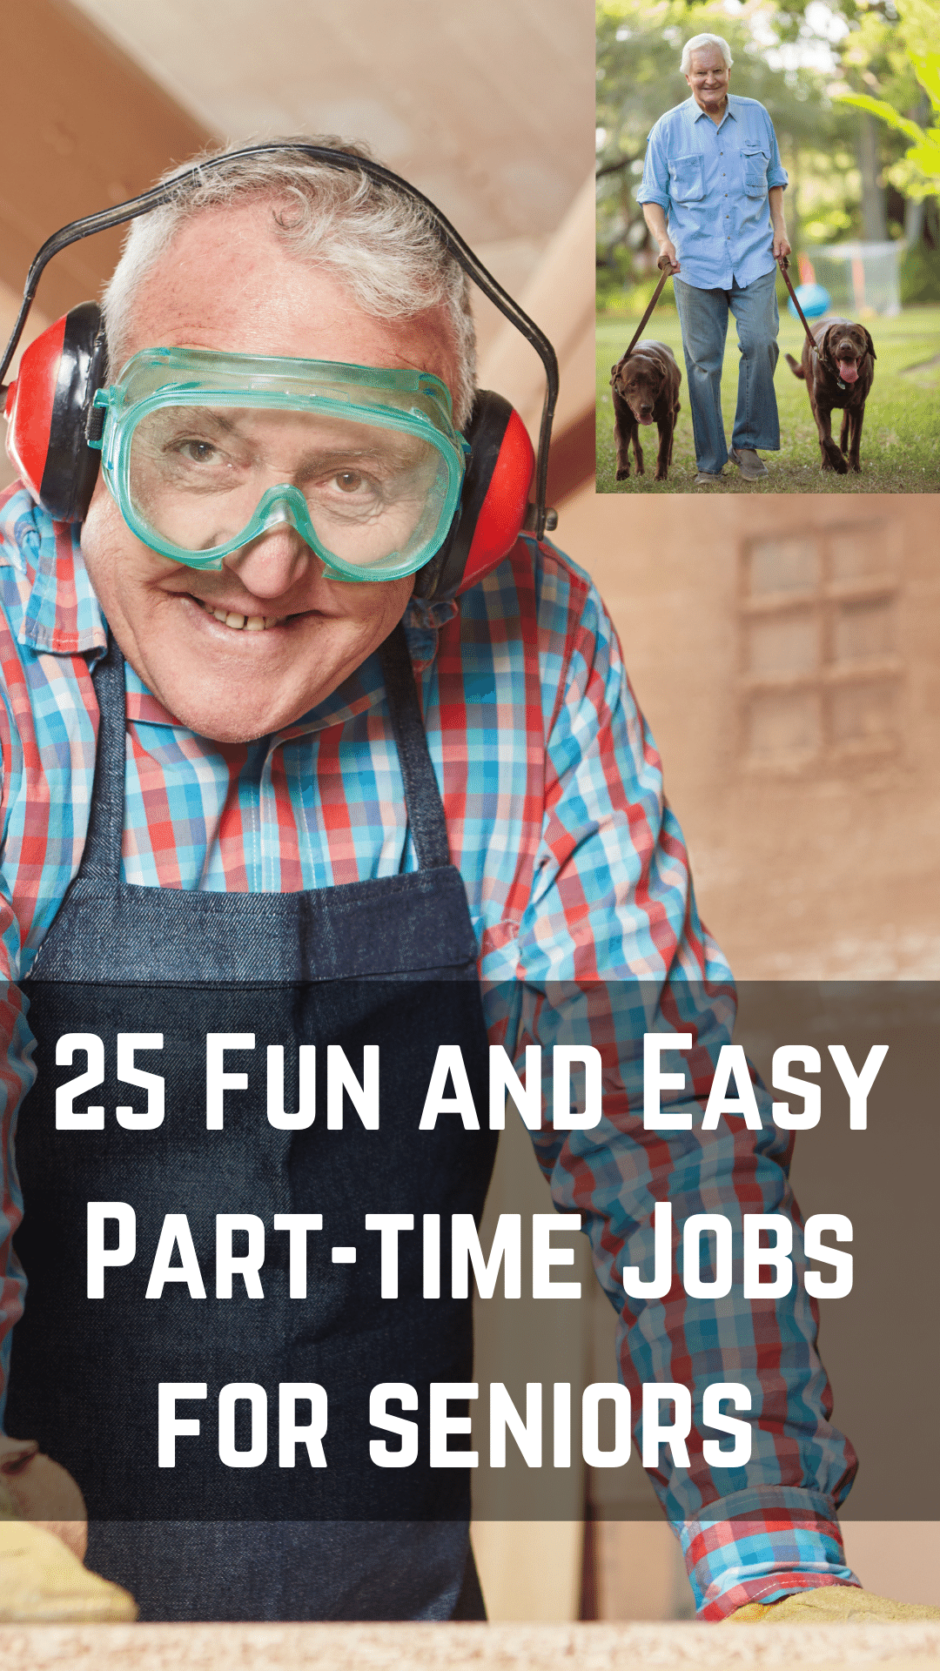 Part-time jobs for seniors